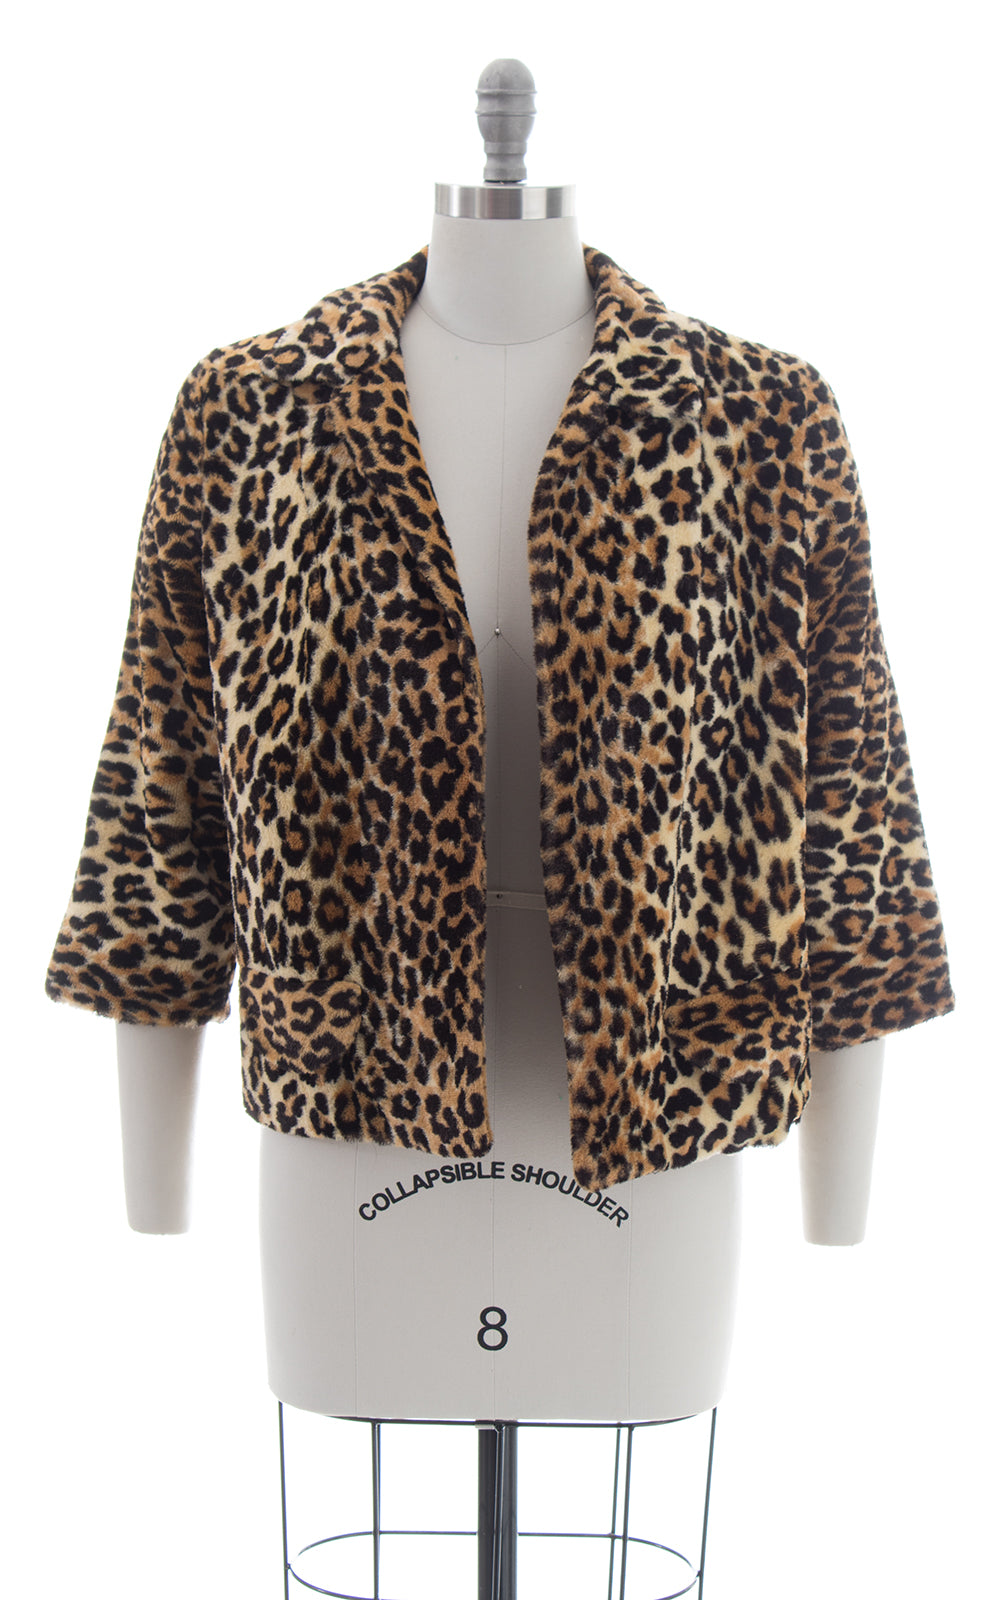 950s Leopard Print Faux Fur Swing Coat